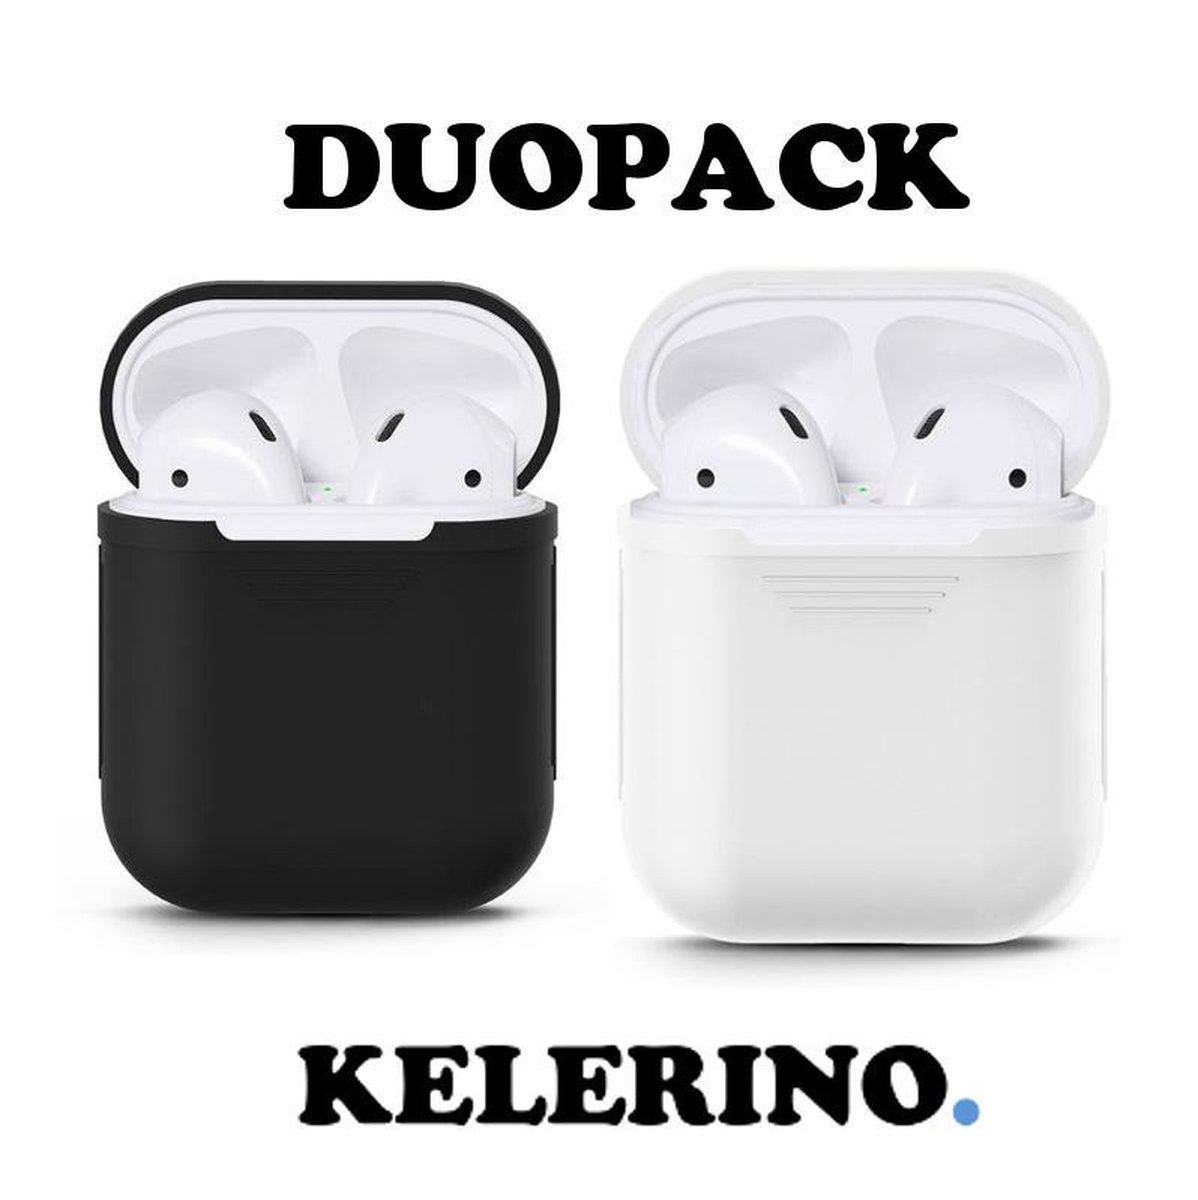 KELERINO. Siliconen hoesje geschikt voor Apple Airpods 1 & 2 - Duopack - Zwart / Wit